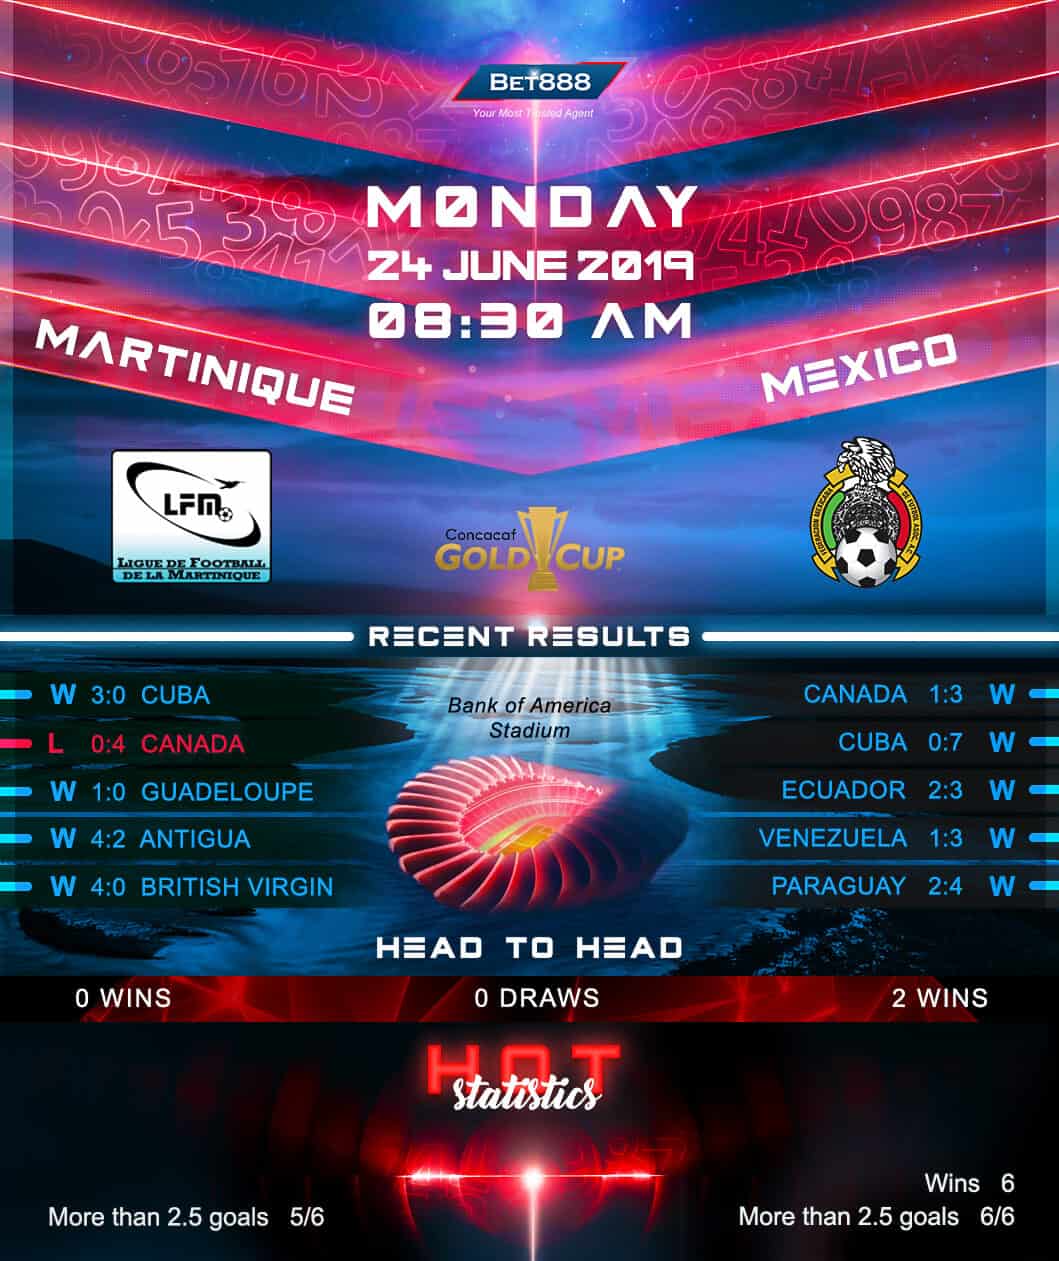 Martinique vs Mexico﻿ 24/06/19